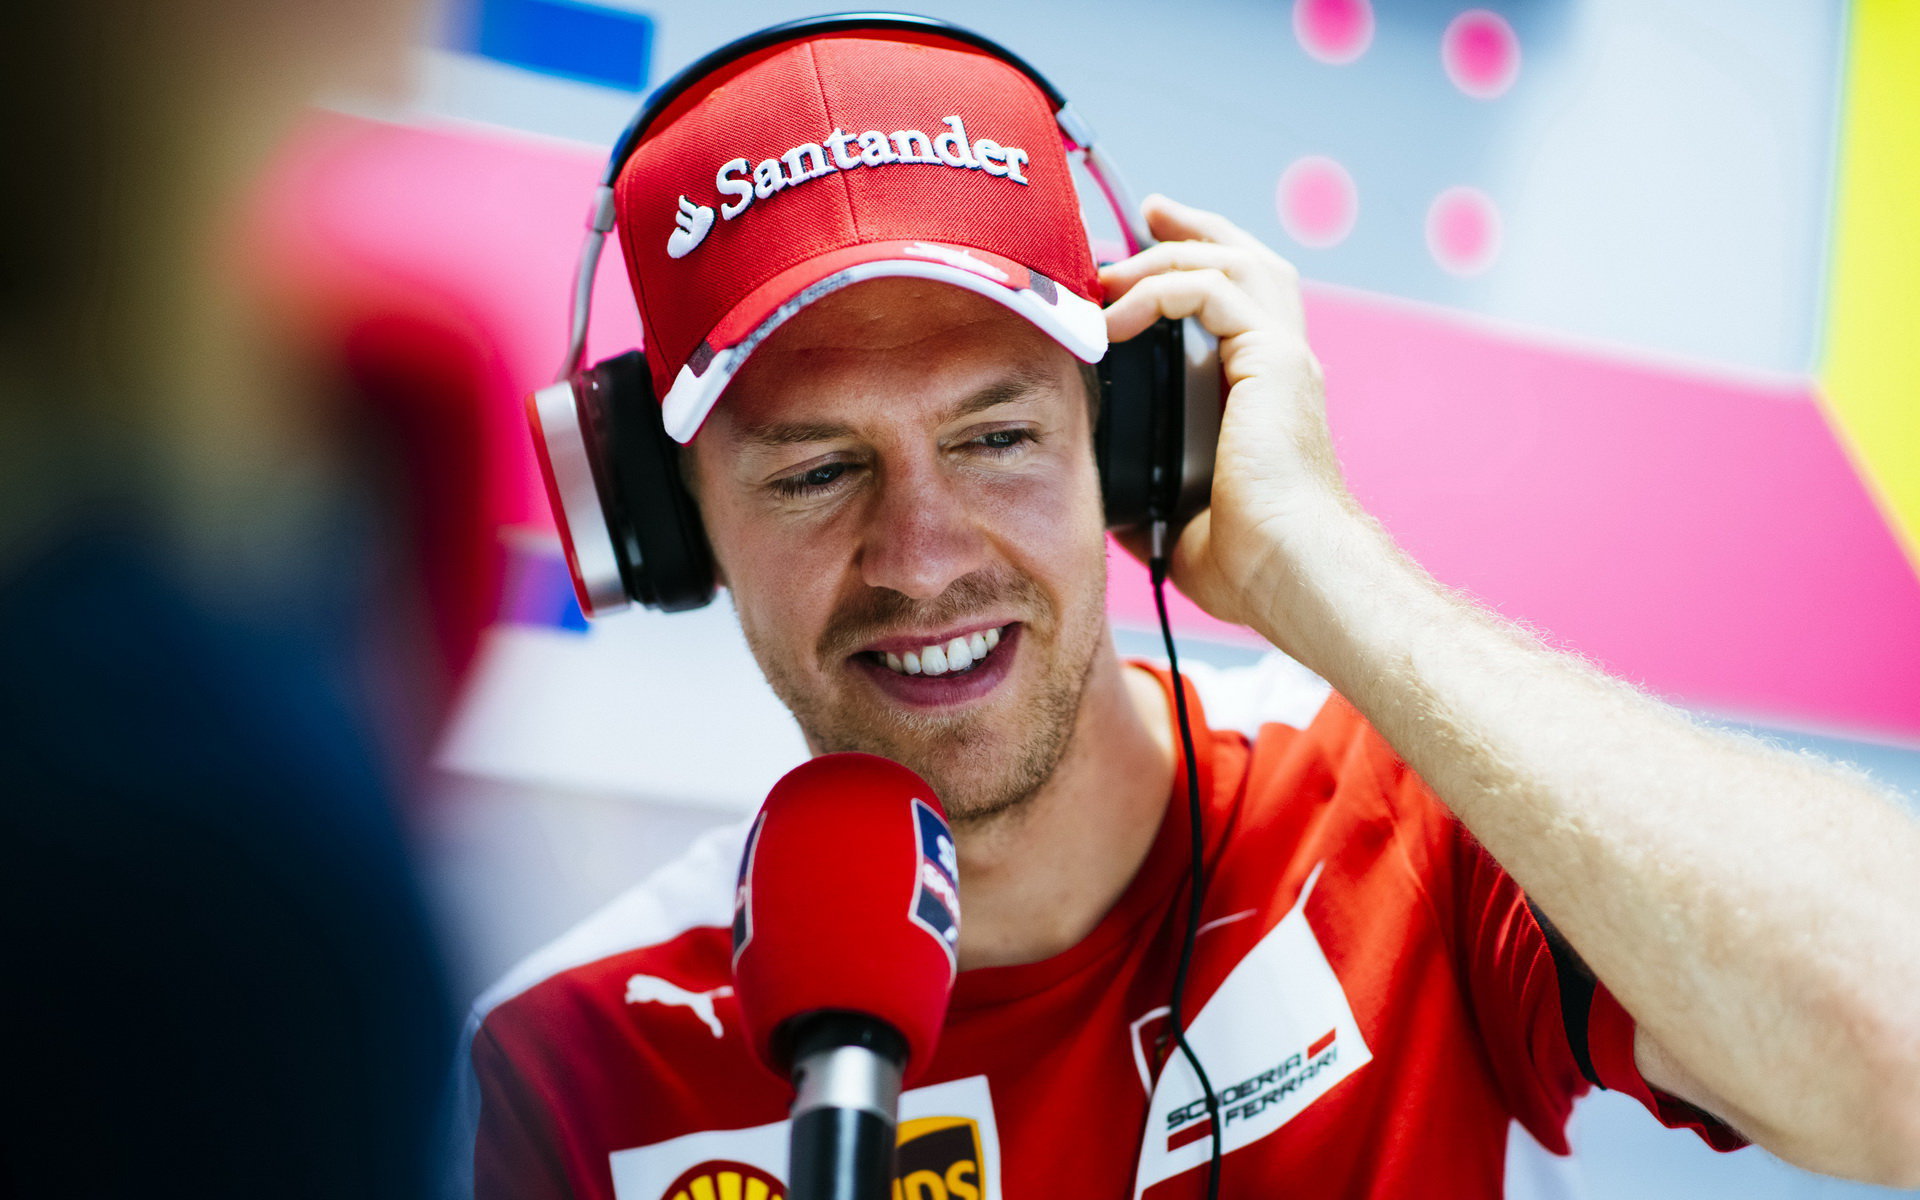 Přes problémy s počasím srší Vettel v Austinu dobrou náladou